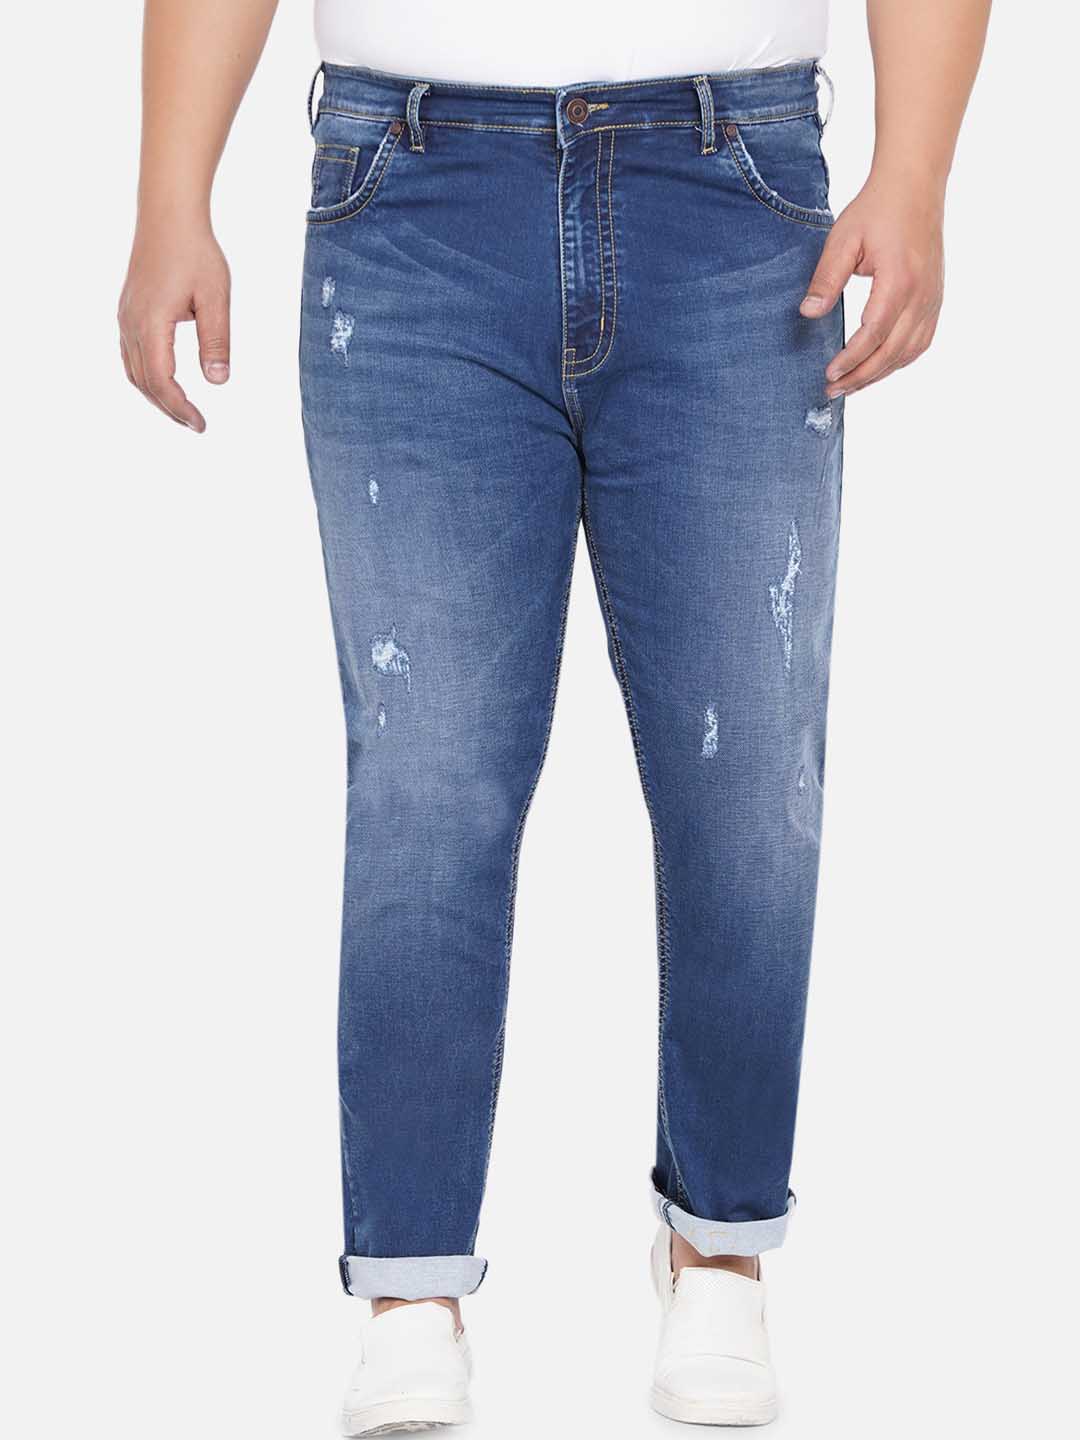 bottomwear/jeans/JPJ12237/jpj12237-6.jpg